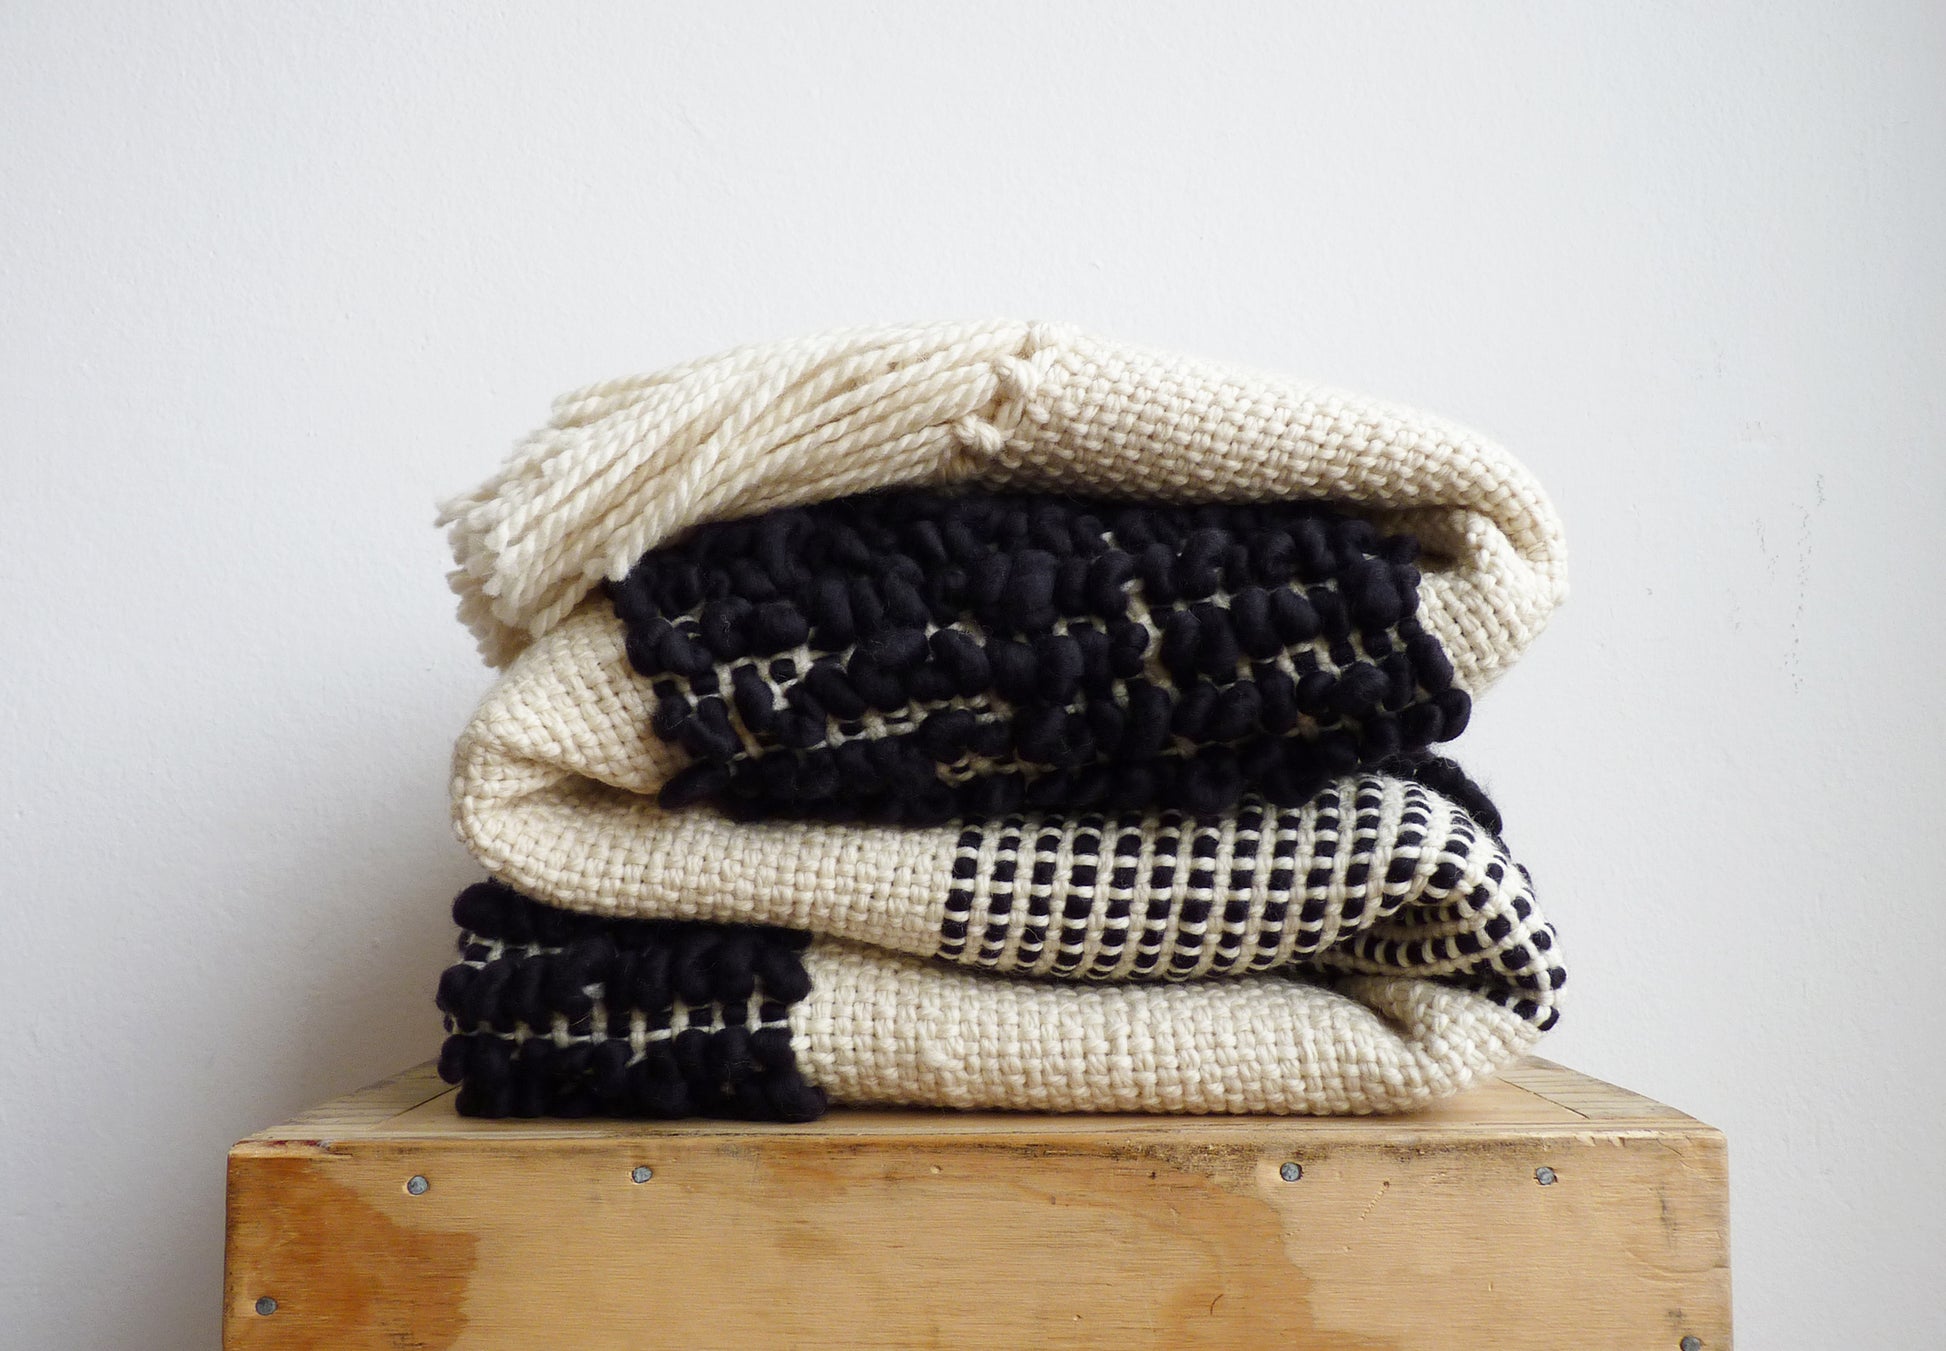 Merino wool cream blanket handweaving with handcrafted loops in Geometrical design